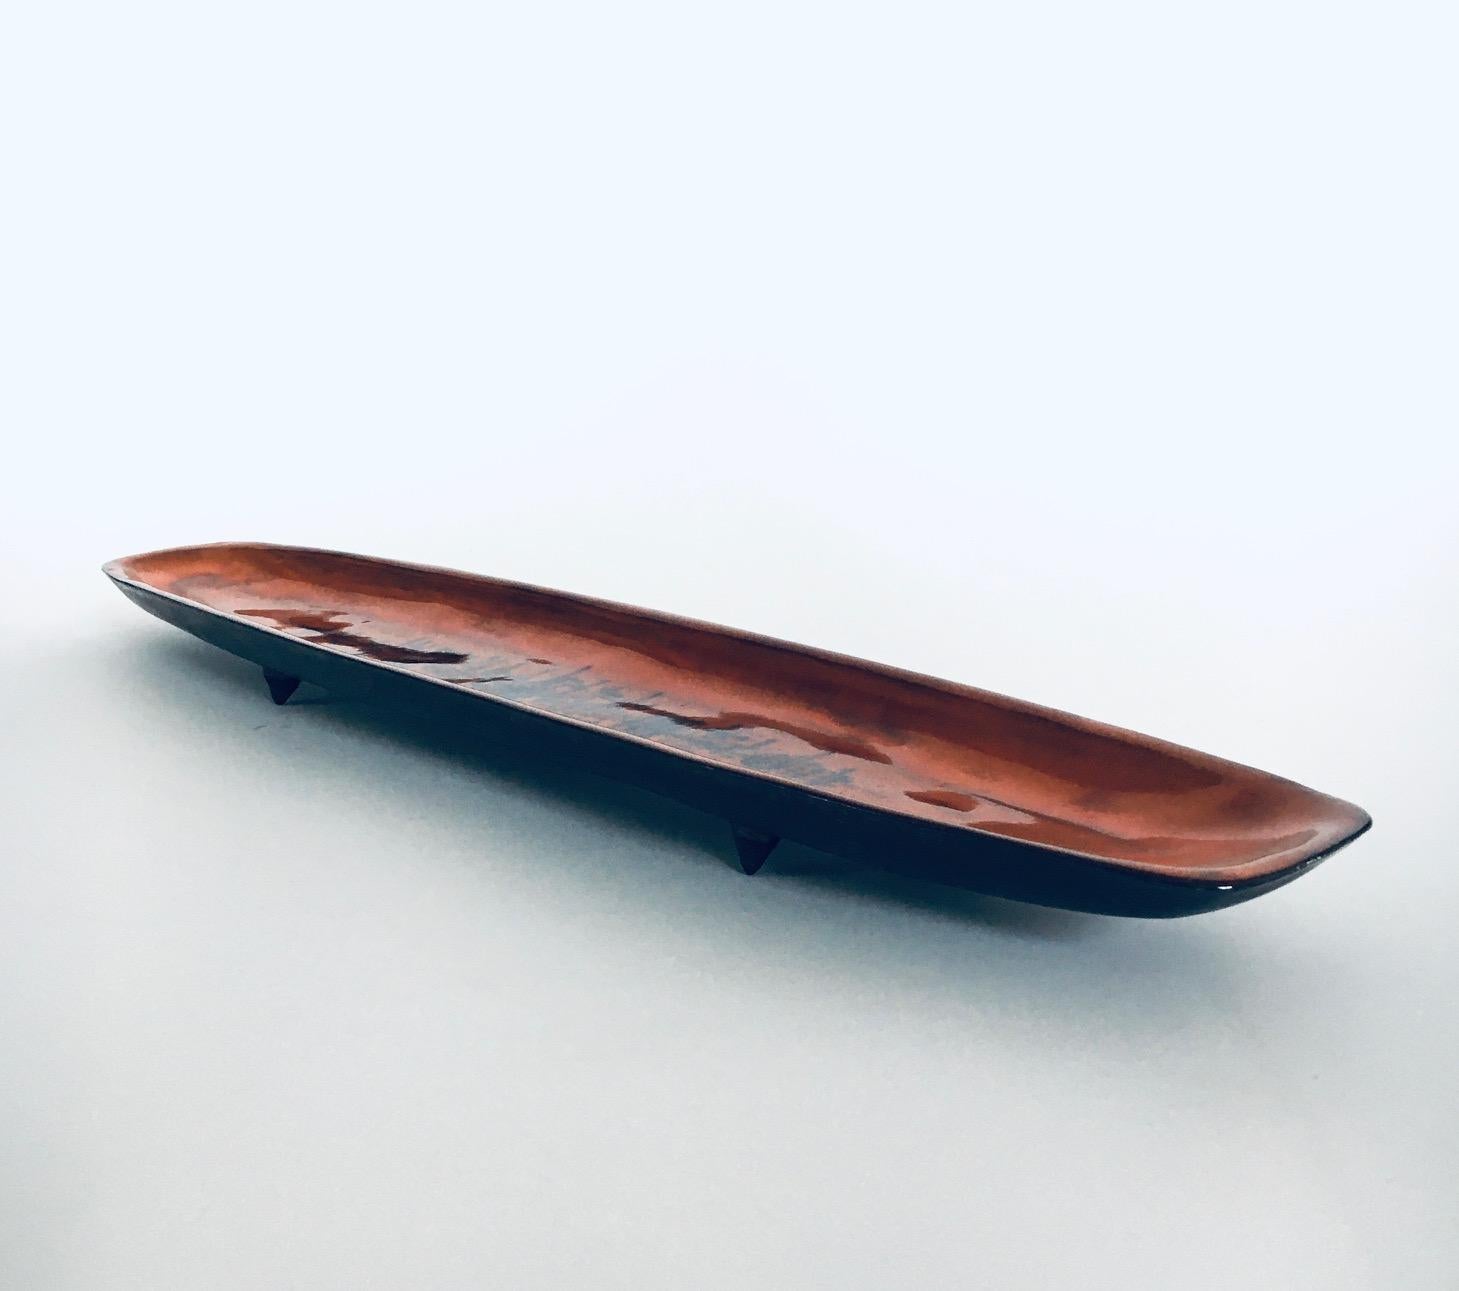 Art Pottery Studio Surfboard Dish by Sanchez for Perignem Studios, Belgium 1960s For Sale 3